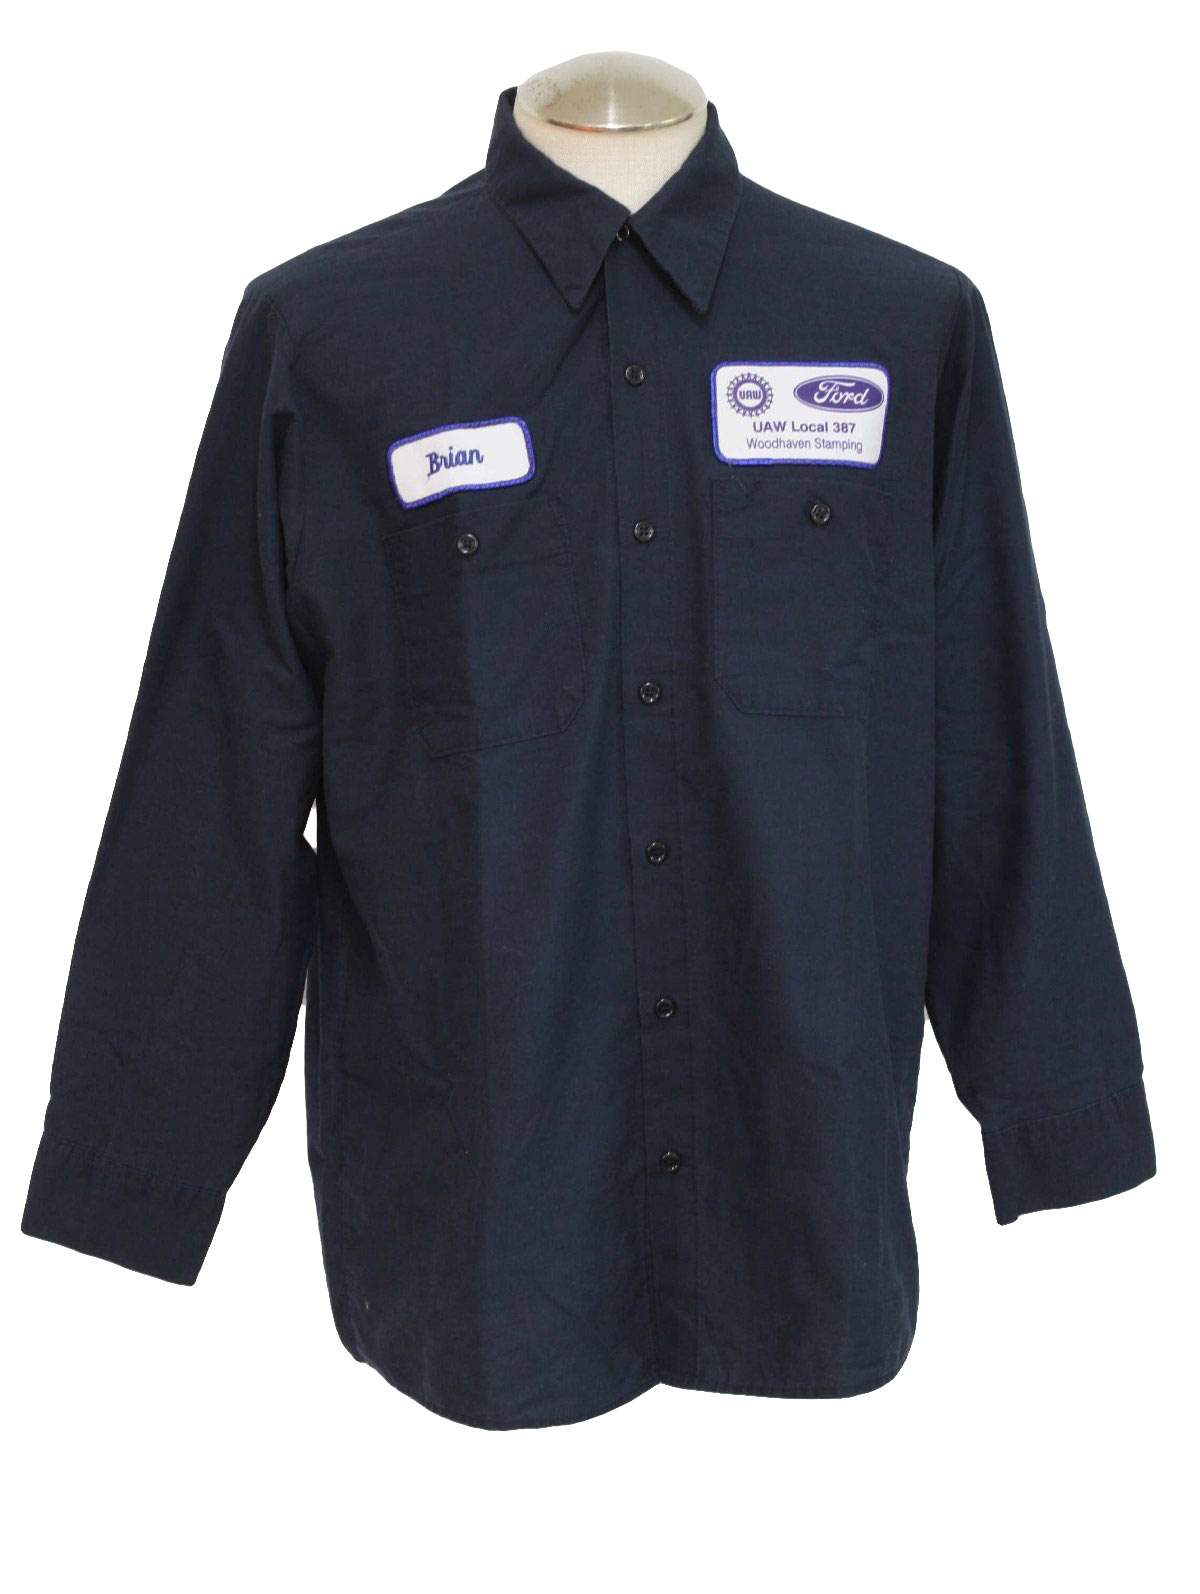 90s Vintage Team Wear Shirt: 90s -Team Wear- Mens navy blue cotton ...